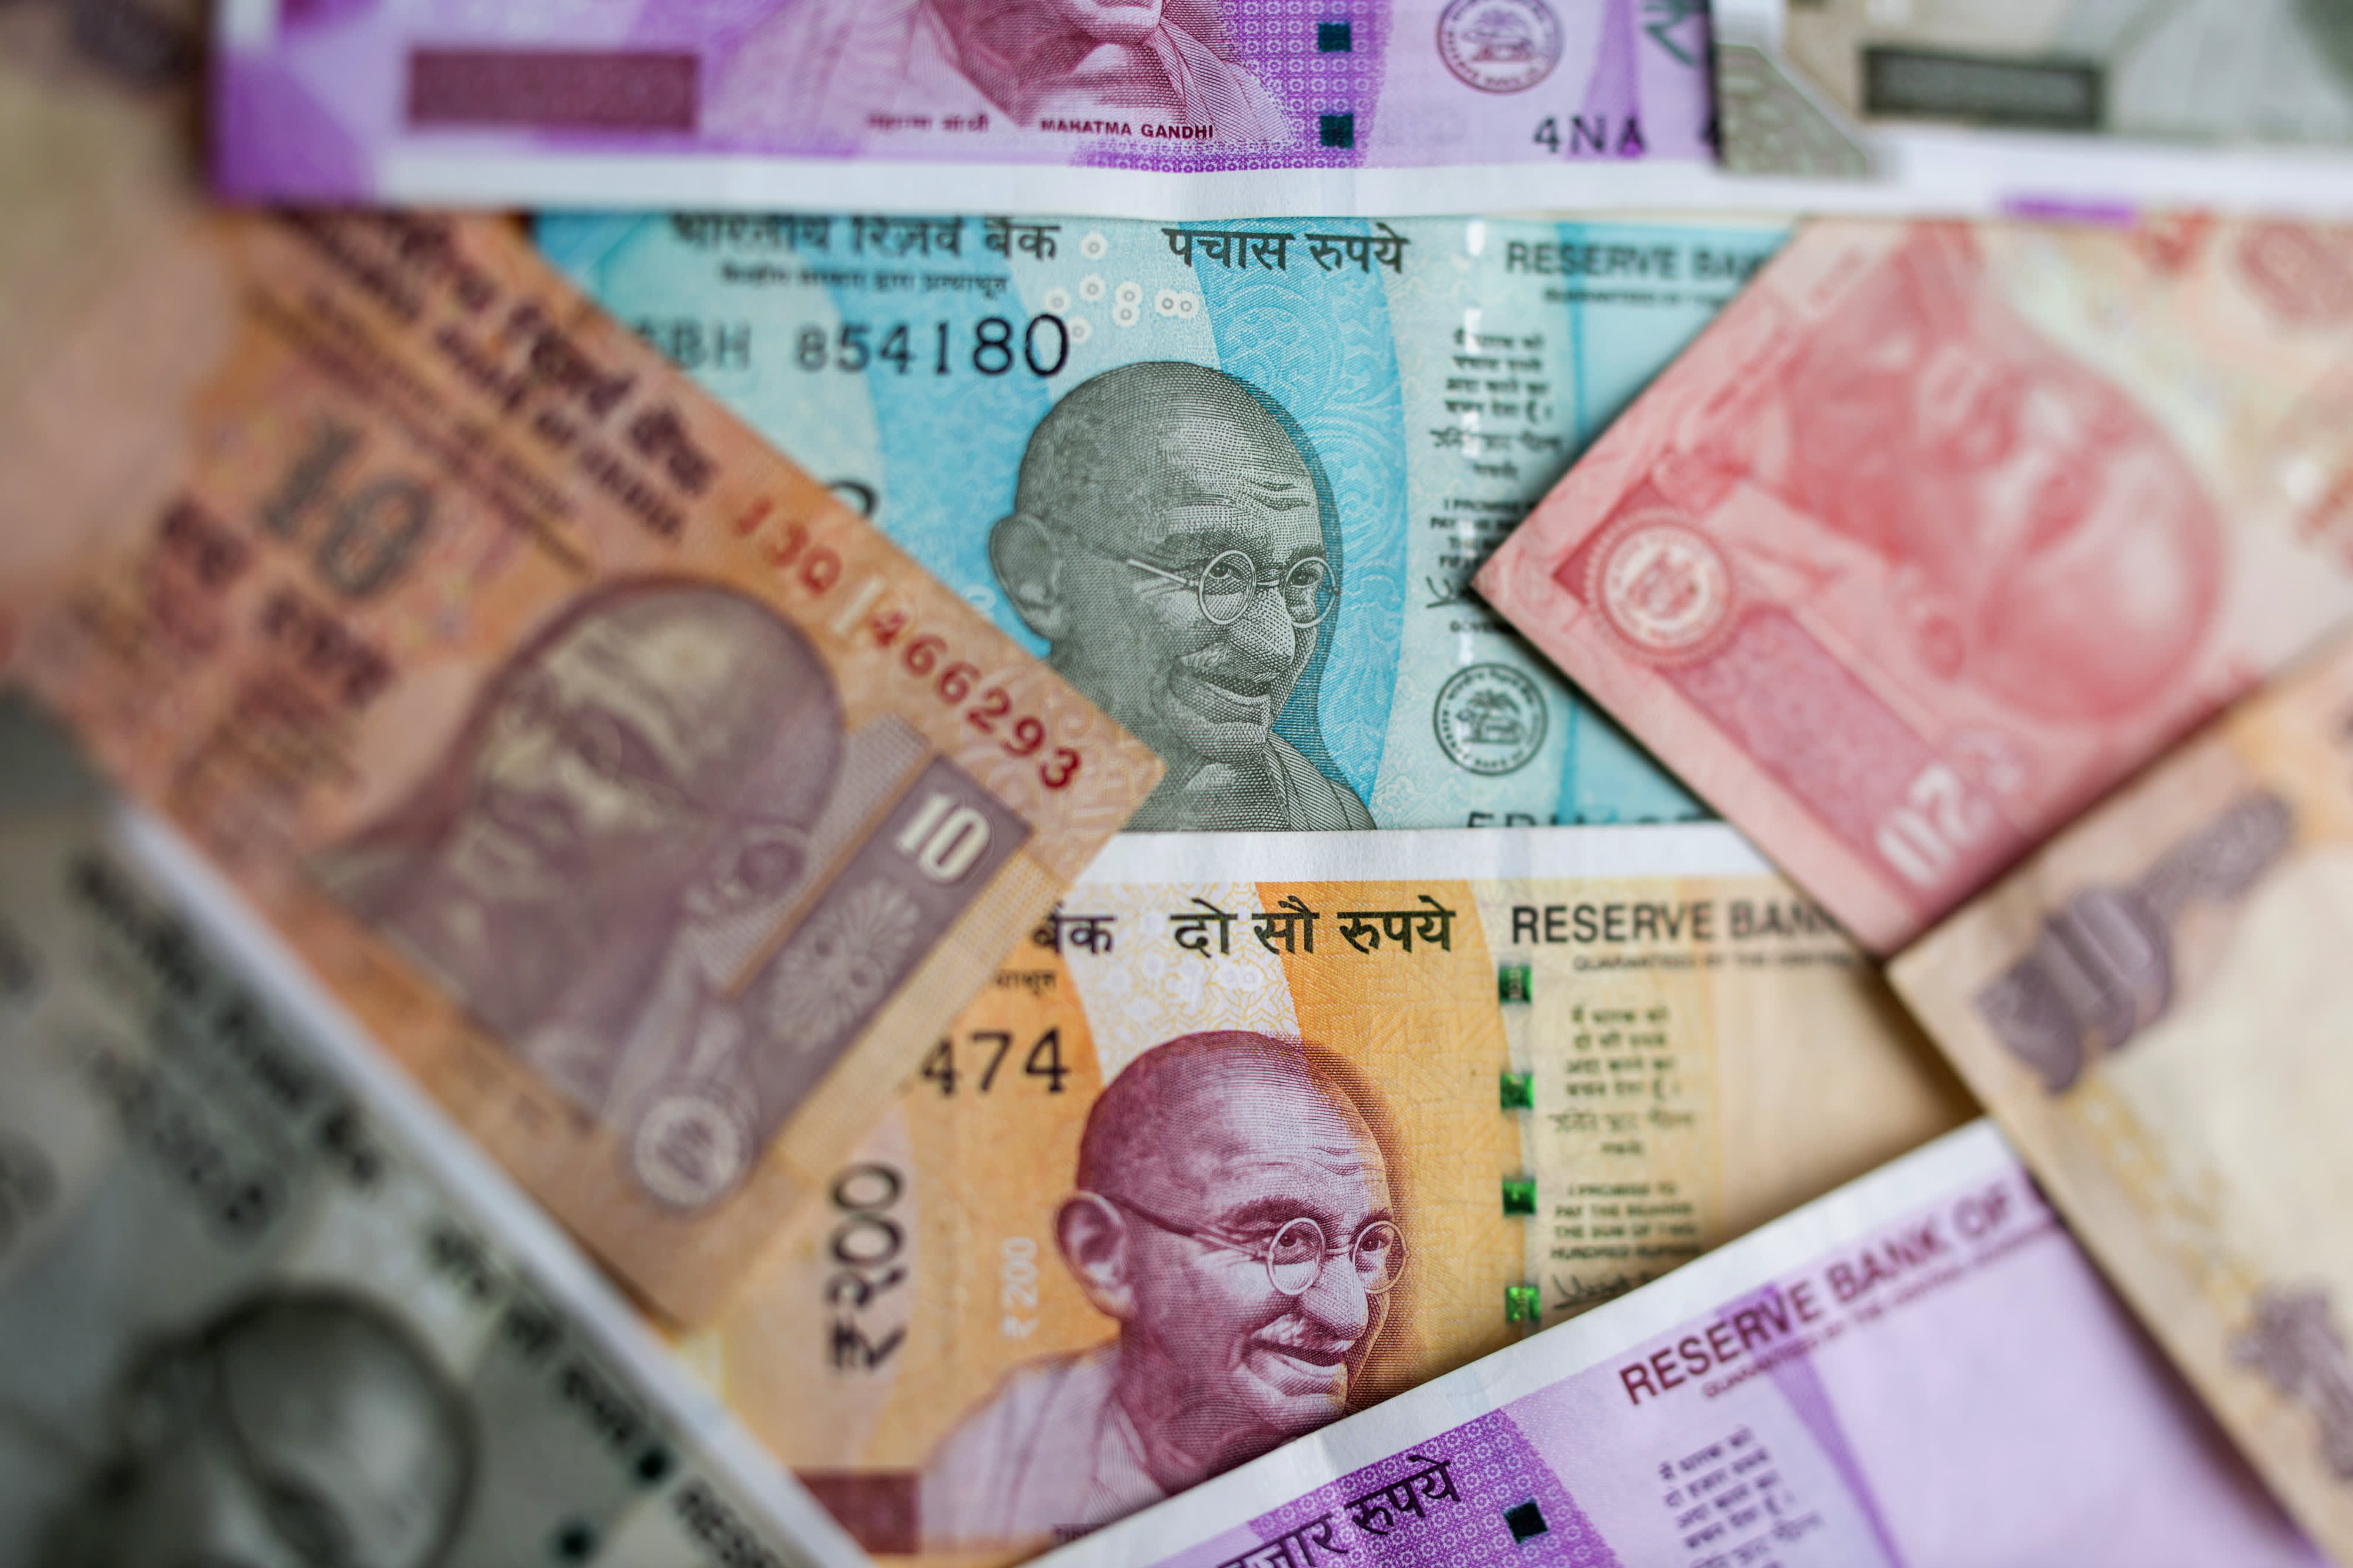 Billionaire Jhunjhunwala says India should ‘ban bitcoin’